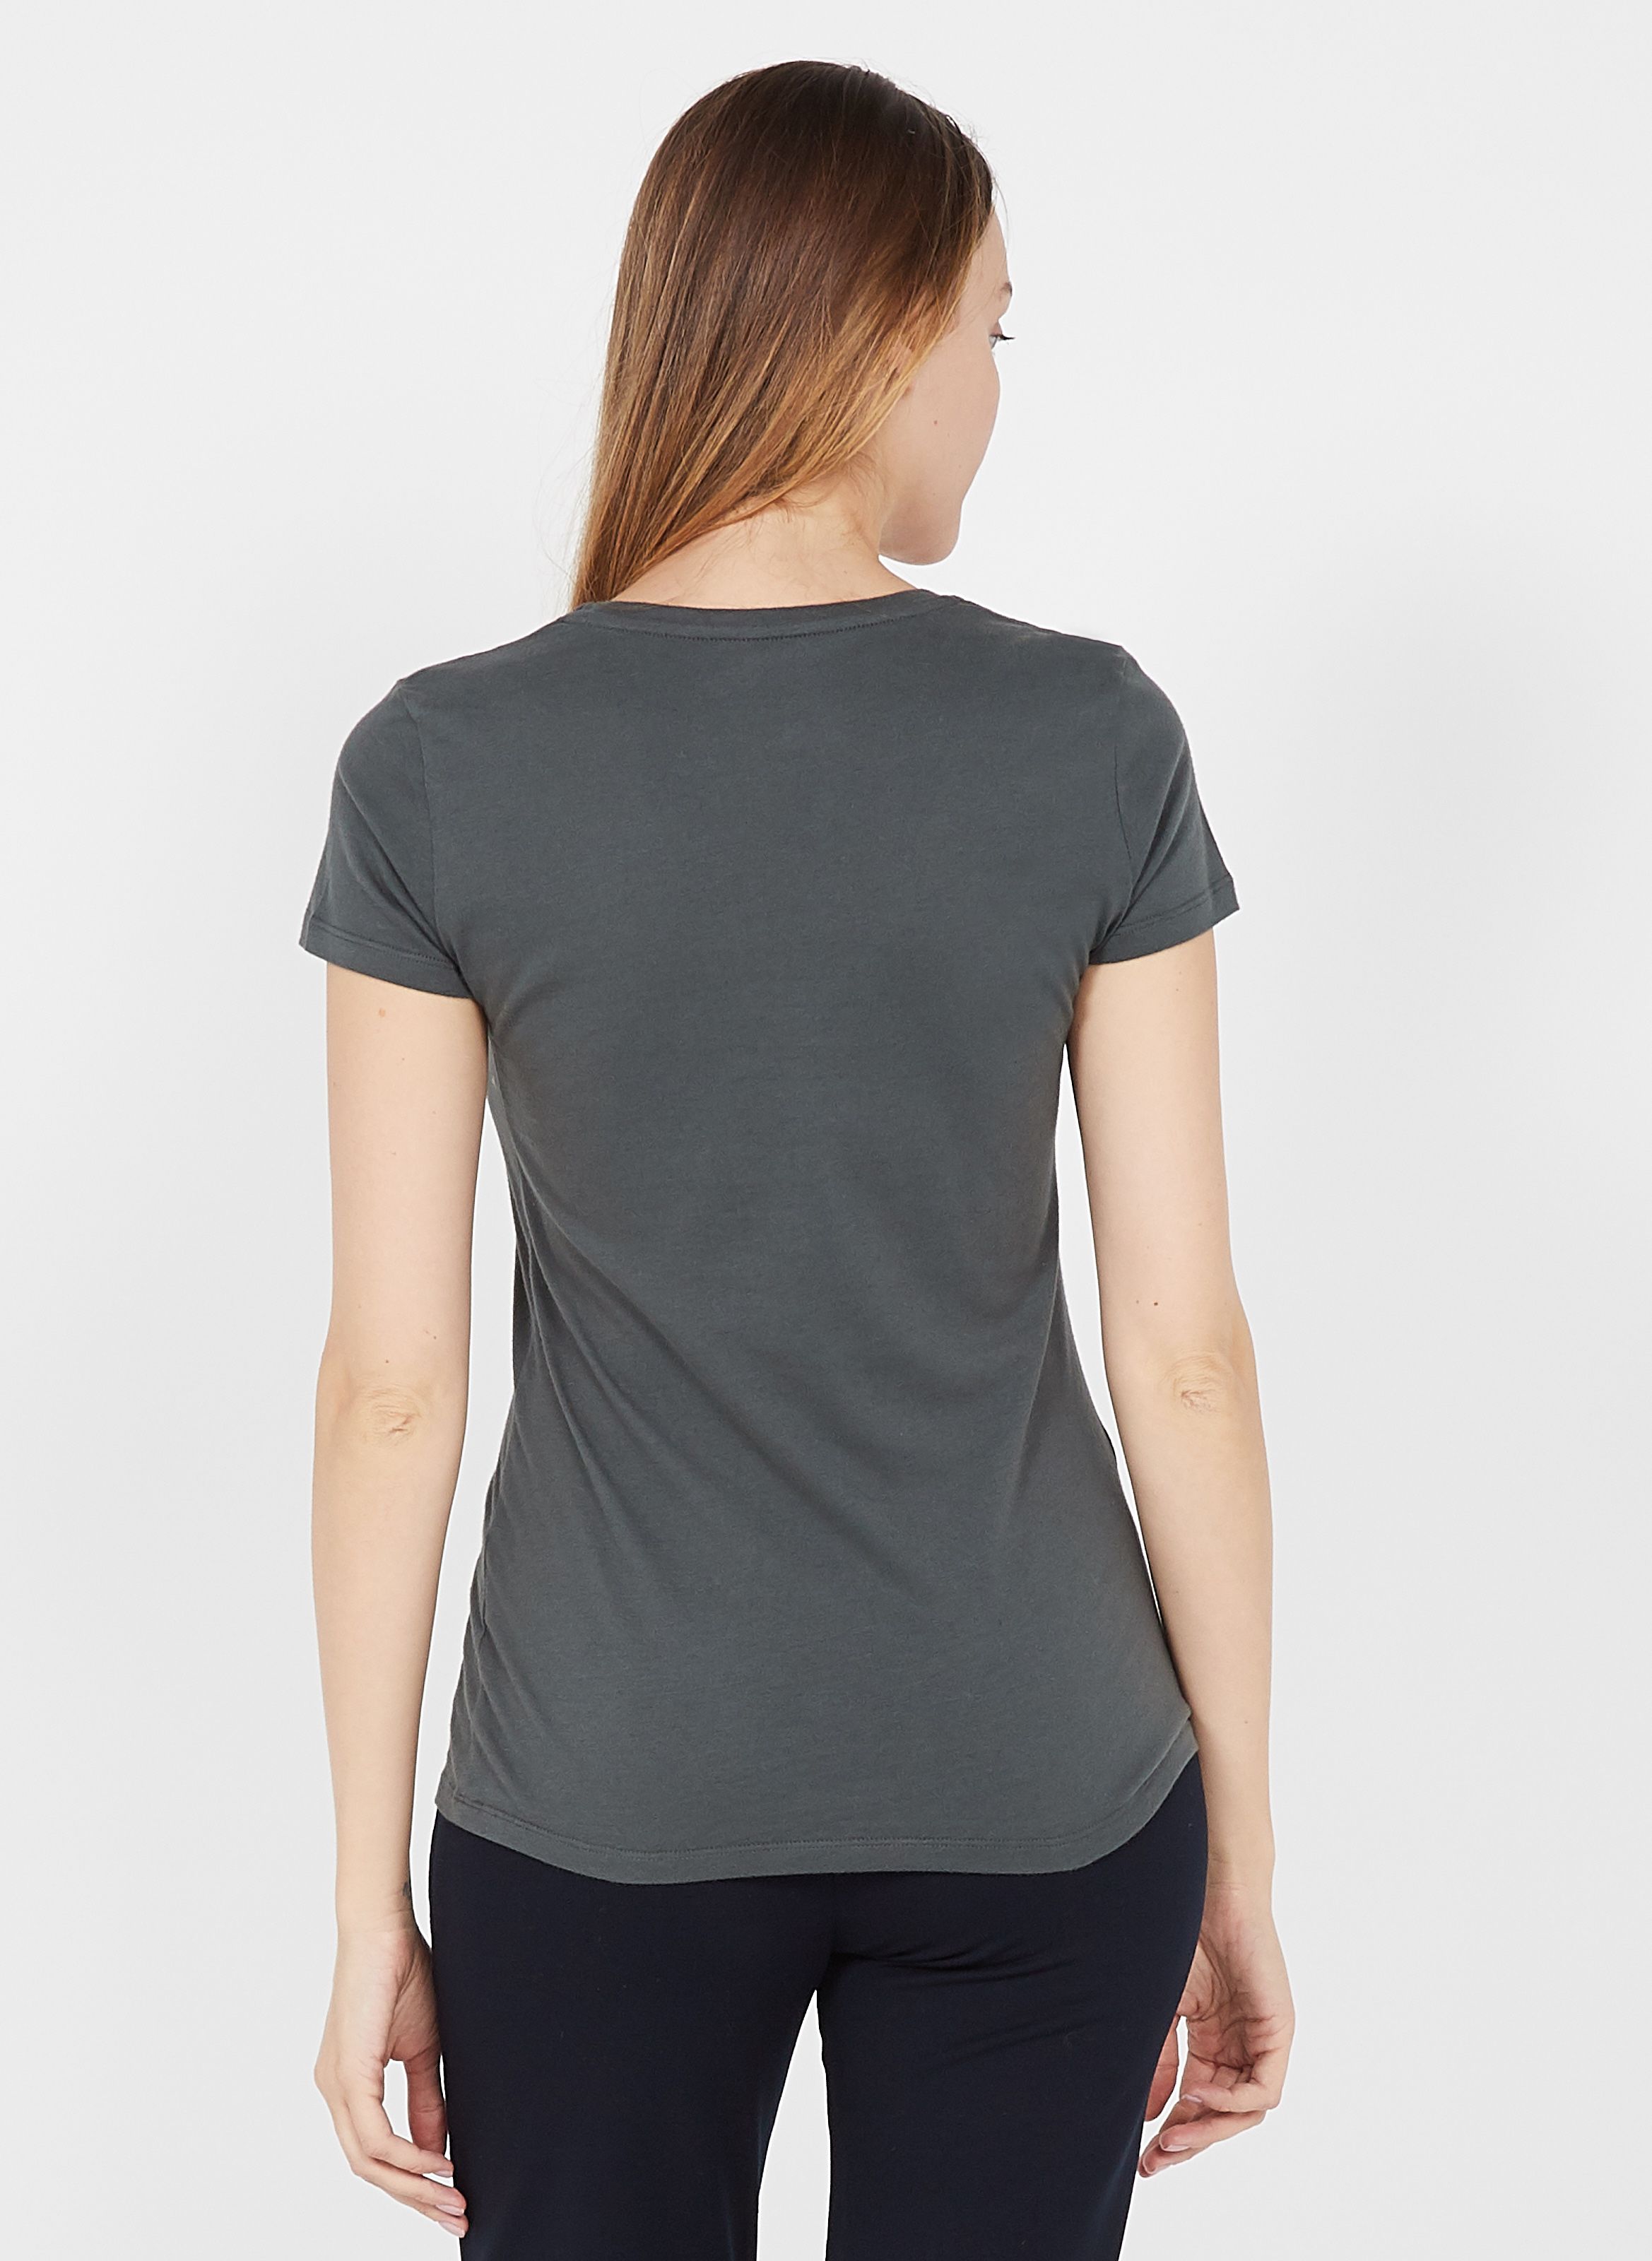 T-shirt Coton Majestic Filatures en coloris Gris Femme Vêtements Tops T-shirts 